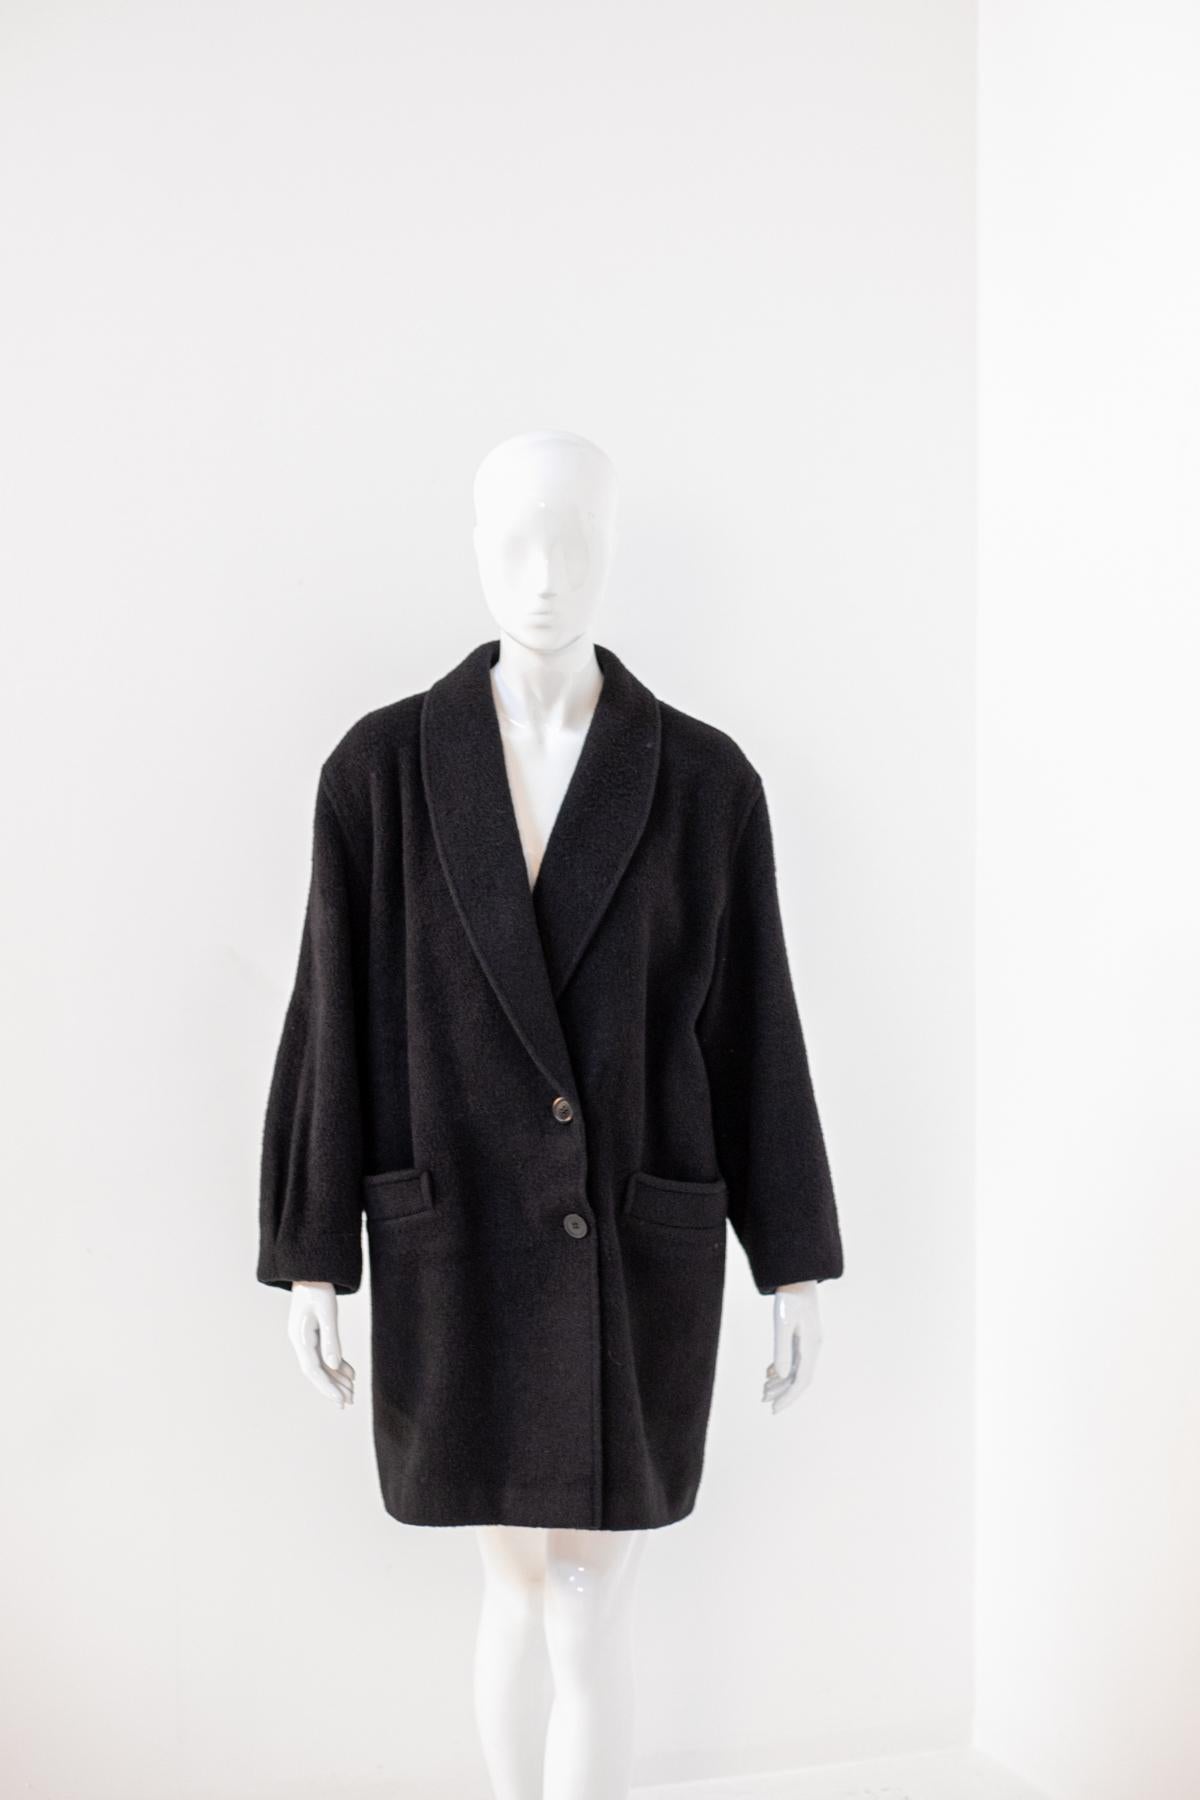 Alpaca Vintage Black Wool Coat For Sale 3